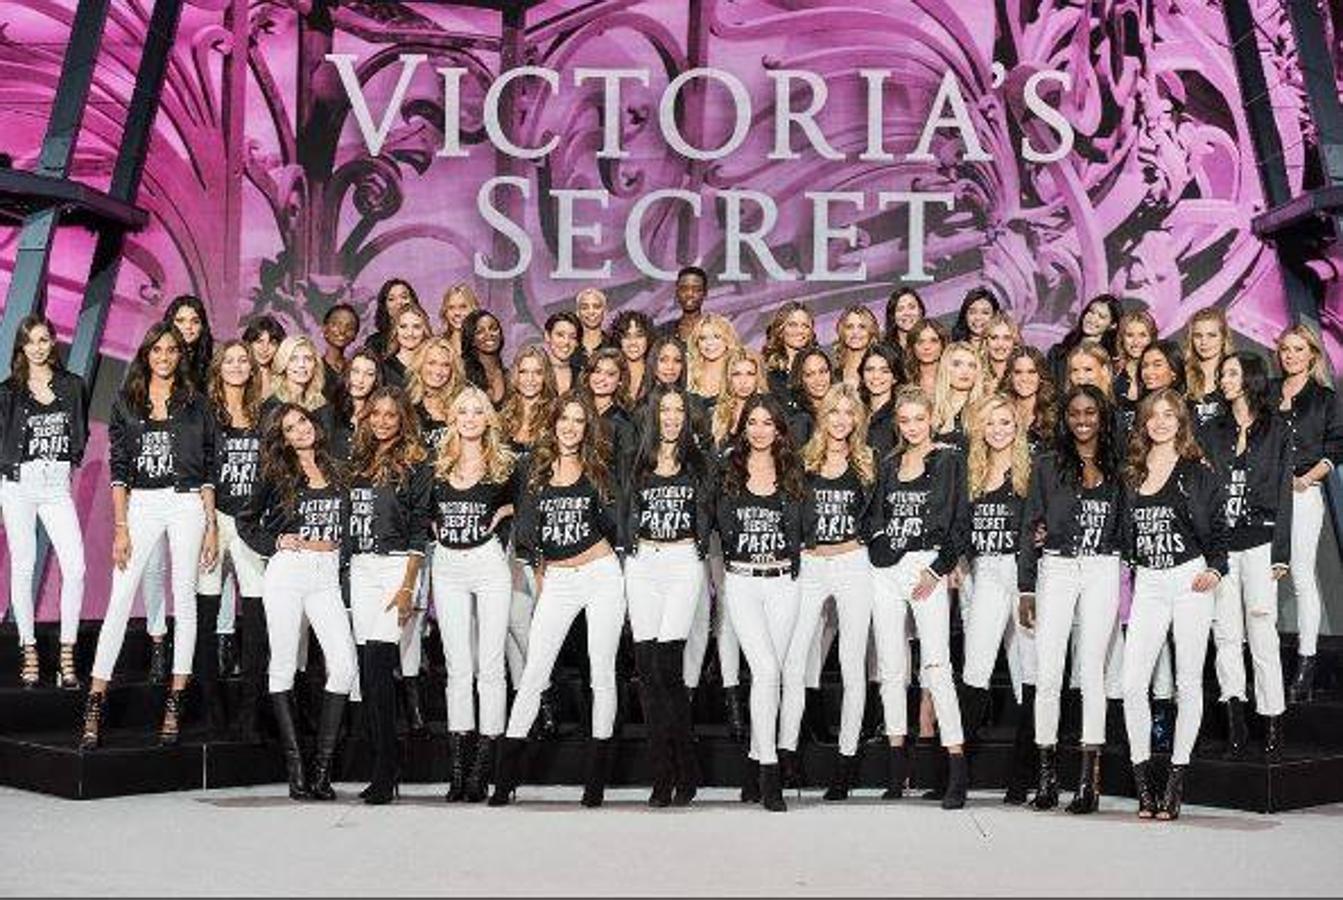 En el grupo, un año más, destacan la presencia de las veteranas Alessandra Ambrosio, Adriana Lima y Lily Aldridge. Las tres son el emblema de Victoria's Secret